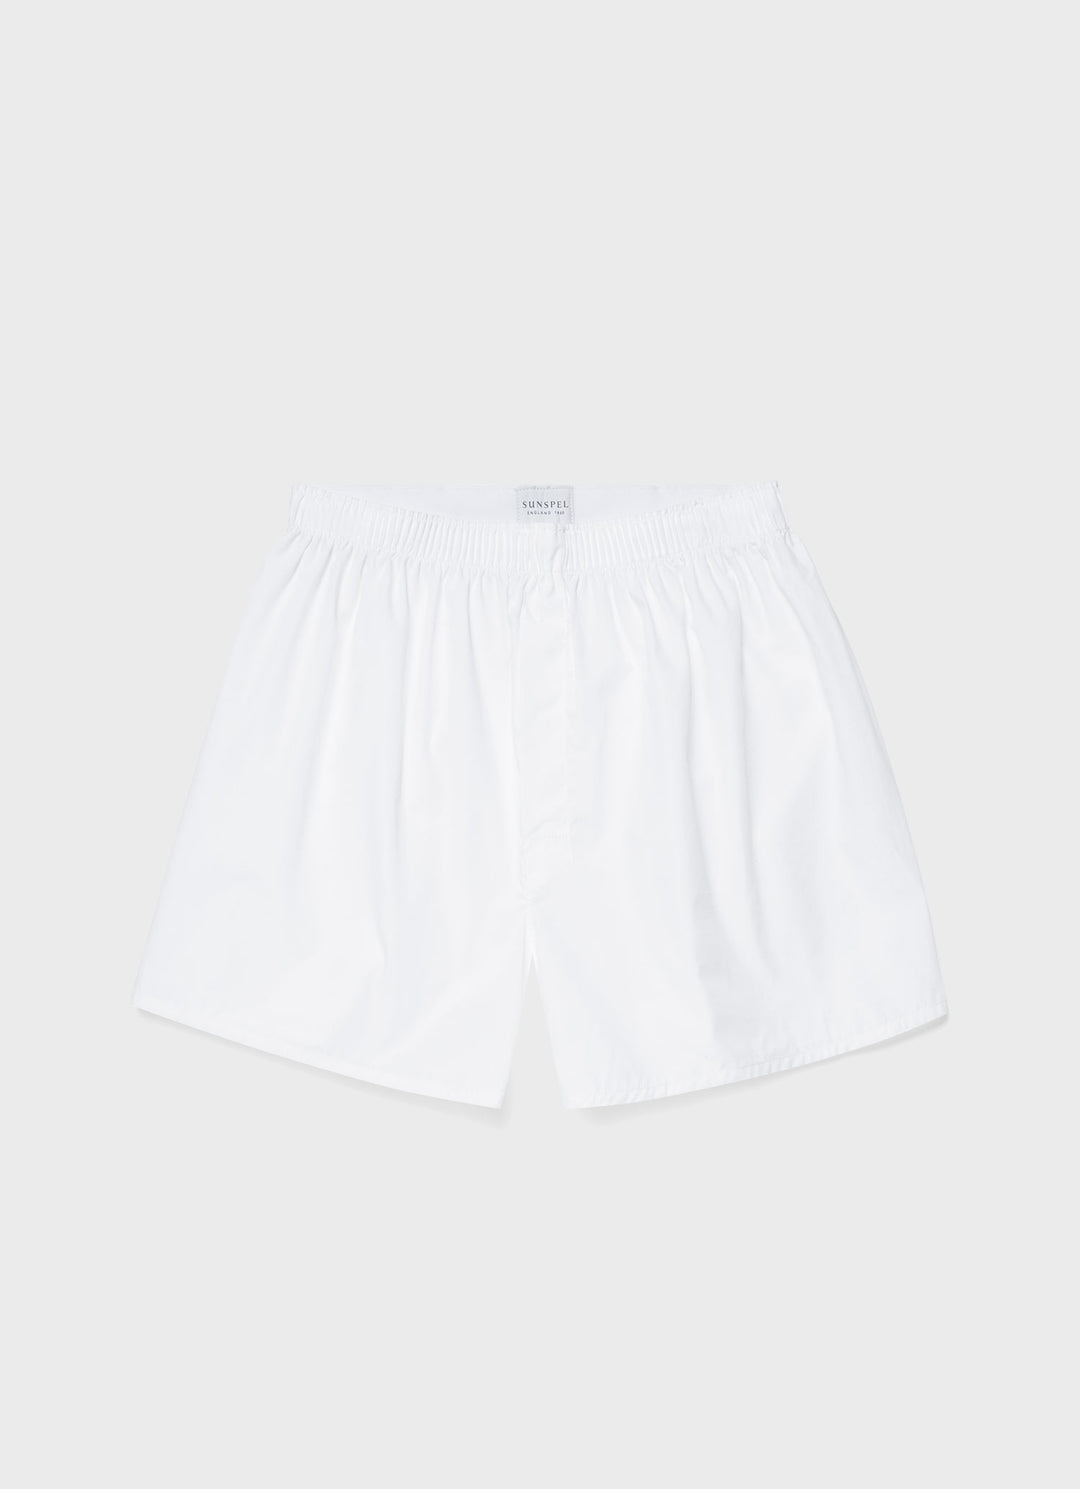 Men's Cotton Poplin Boxer Shorts in White | Sunspel